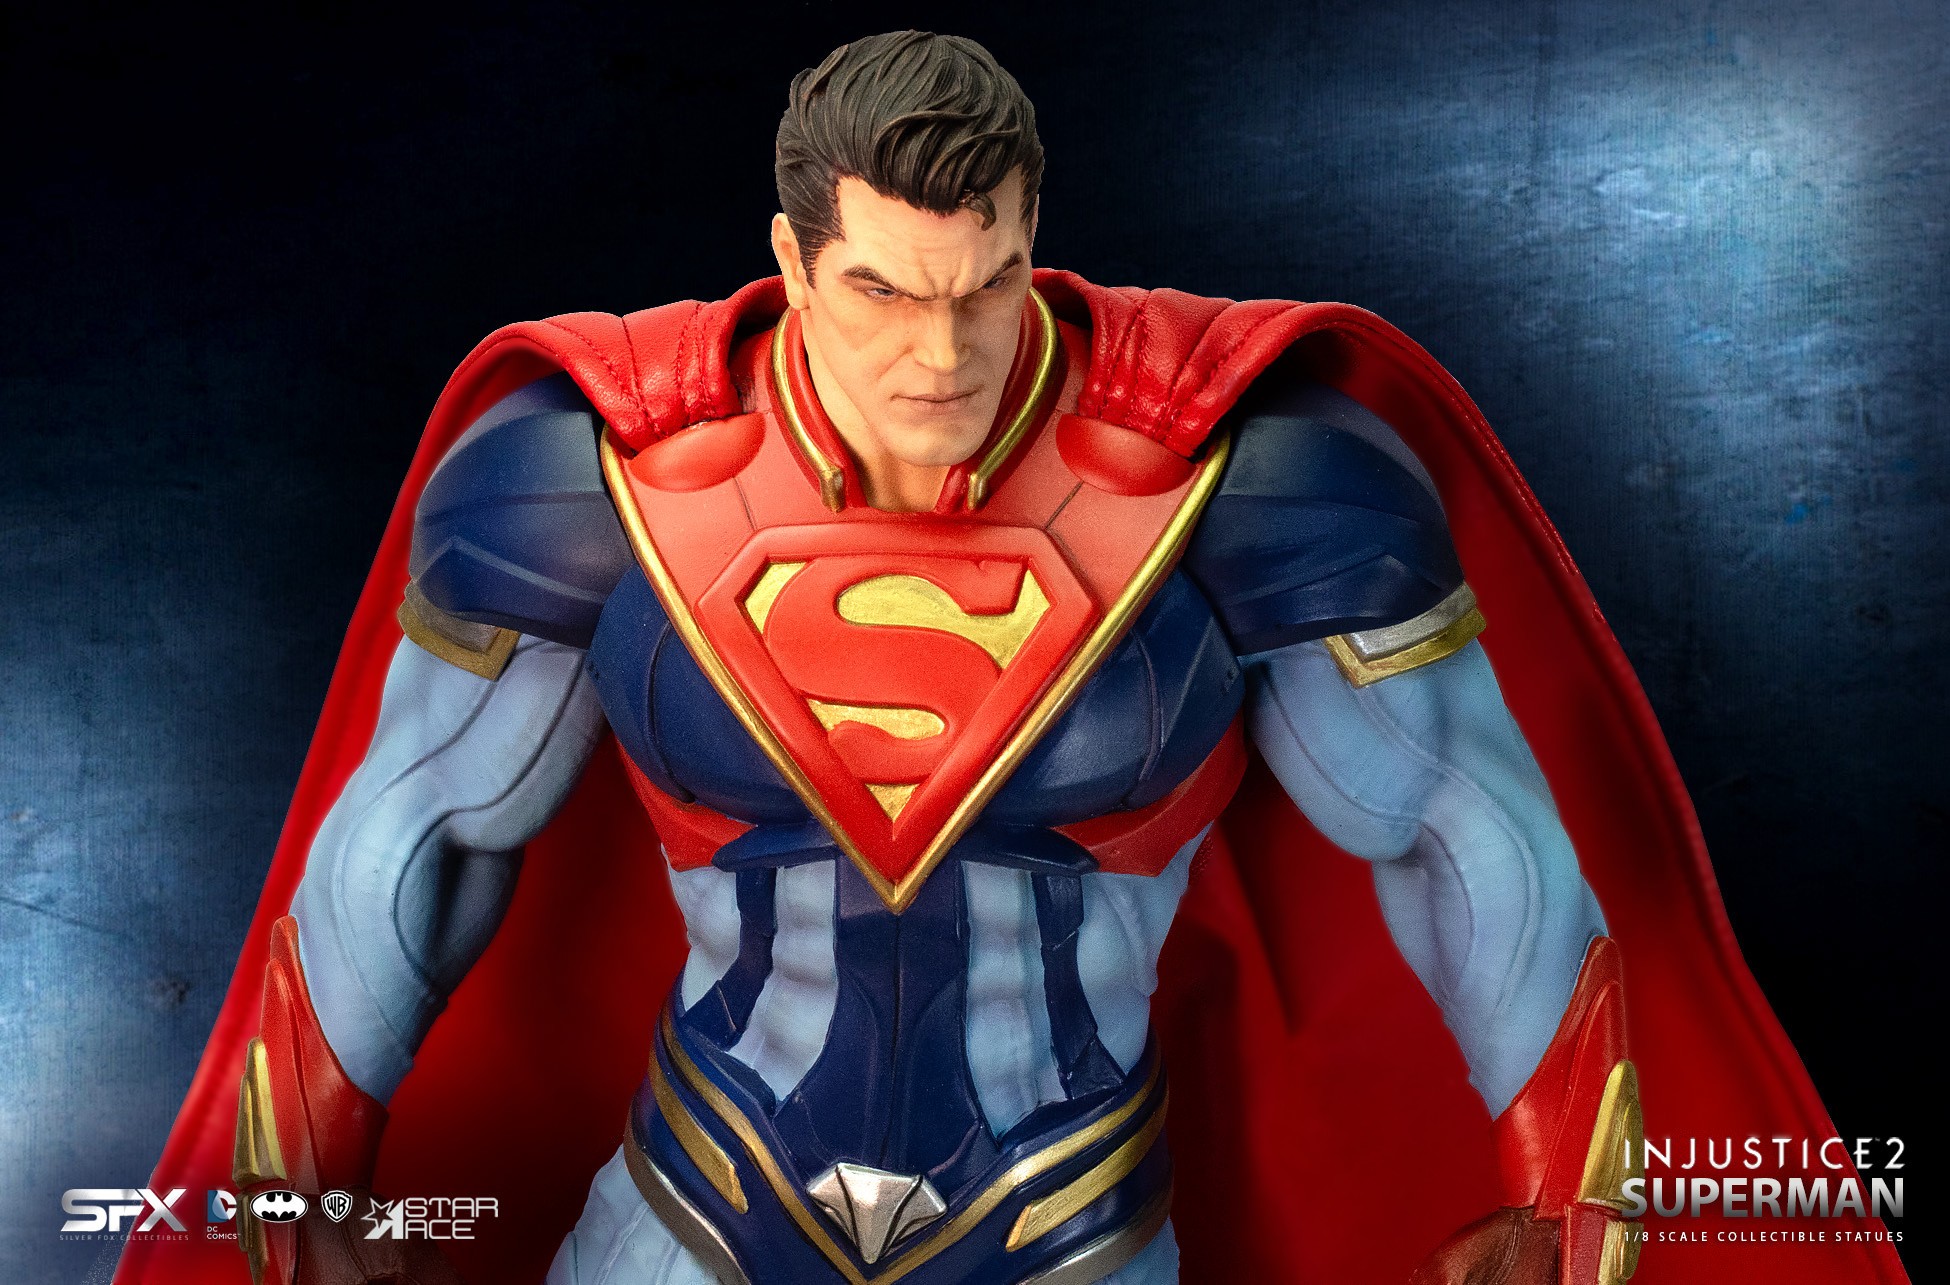 Superman Injustice II Deluxe (Prototype Shown) View 10